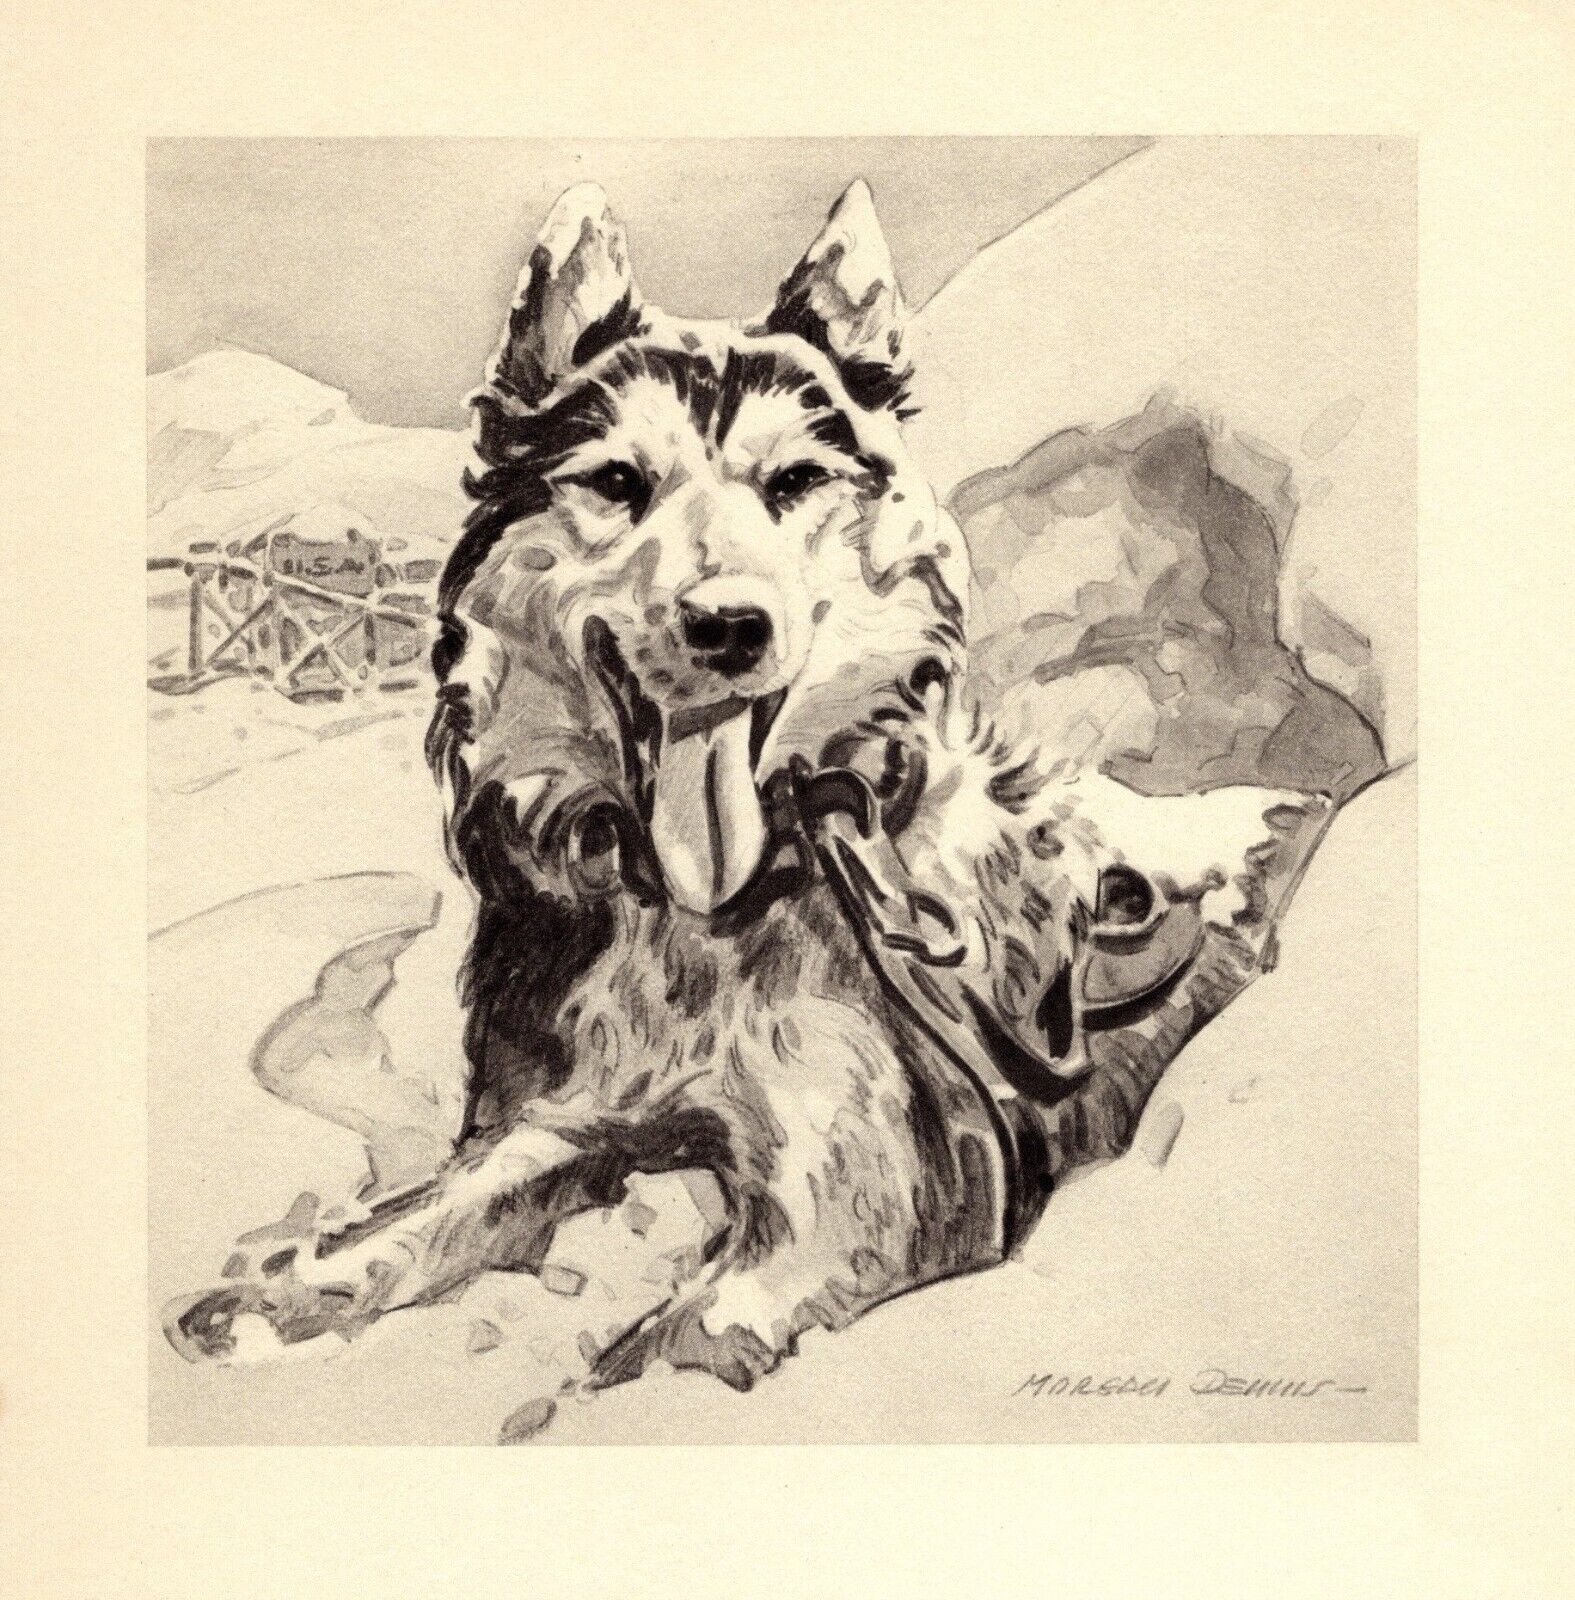 1947 Antique Siberian Husky Art Print Morgan Dennis Husky Illustration 4969t